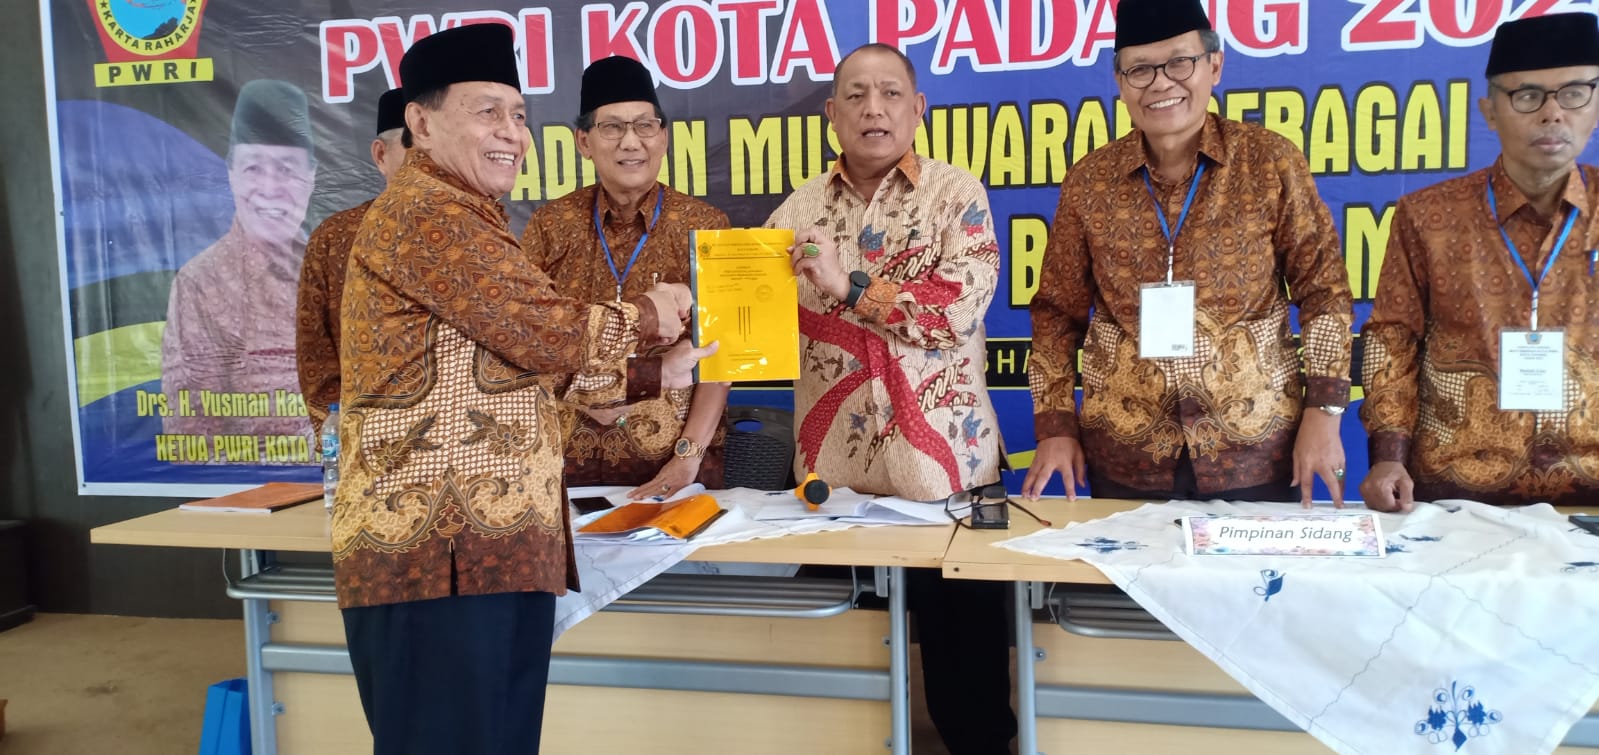 Ketua PWRI Sumatera Barat Drs. H Syafrizal Ucok, menyerahkan hasil Pemilihan kepada Ketua PWRI Kota Padang terpilih, Yusman Kasim, Rabu (20/12/2023) di Padang.